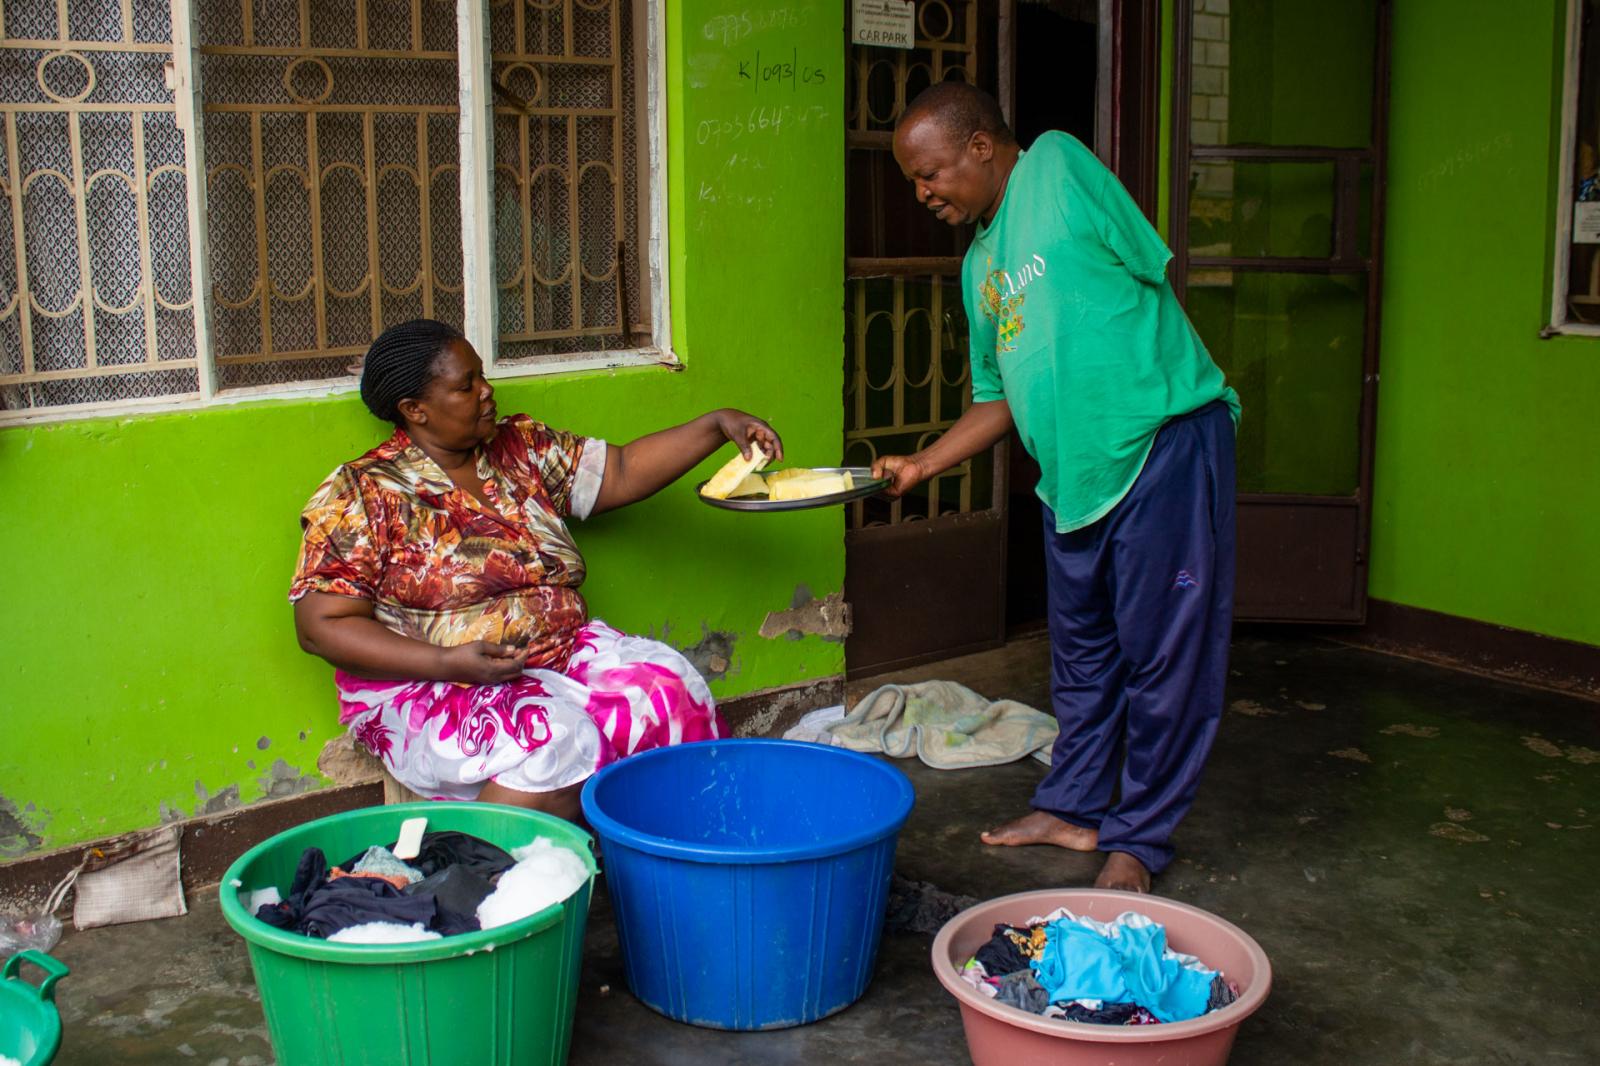 Image from Peter Philip Kairu | General Orders - Mulokole is a door-to-door salesman dealing in fruits,...